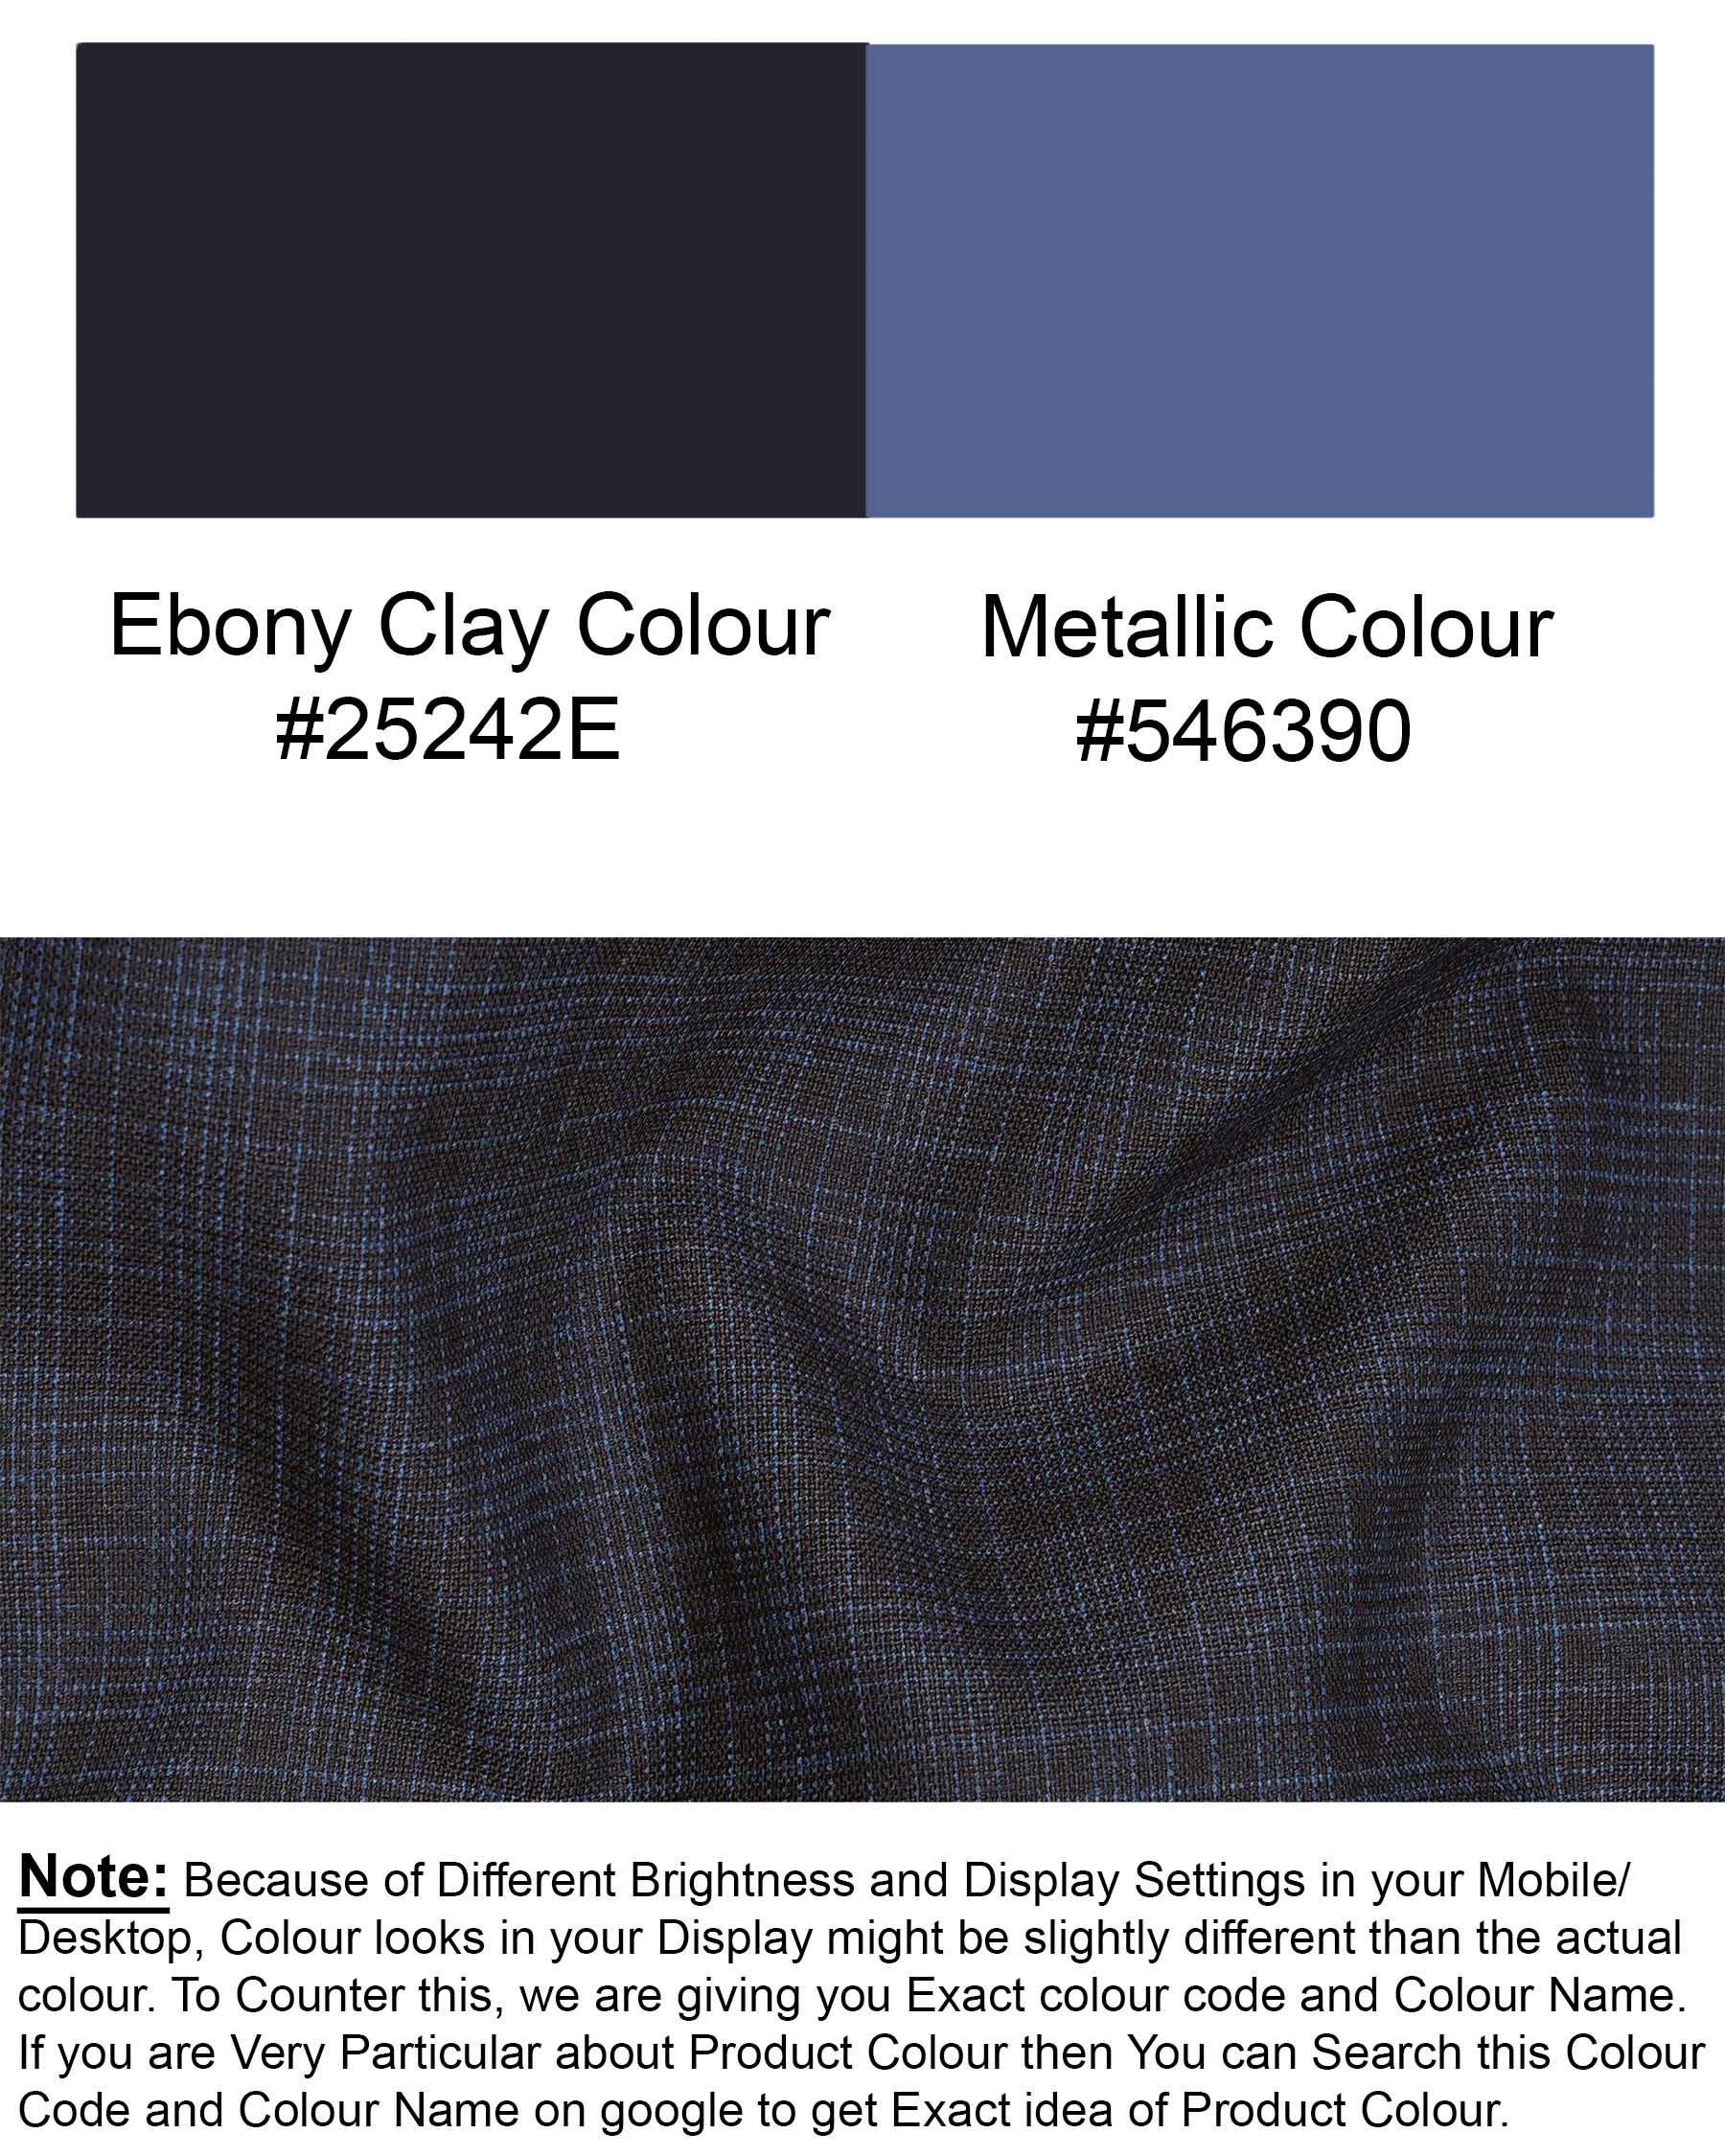 Ebony Clay Gray and Metallic Blue Plaid Waistcoat V1939-36, V1939-38, V1939-40, V1939-42, V1939-44, V1939-46, V1939-48, V1939-50, V1939-52, V1939-54, V1939-56, V1939-58, V1939-60